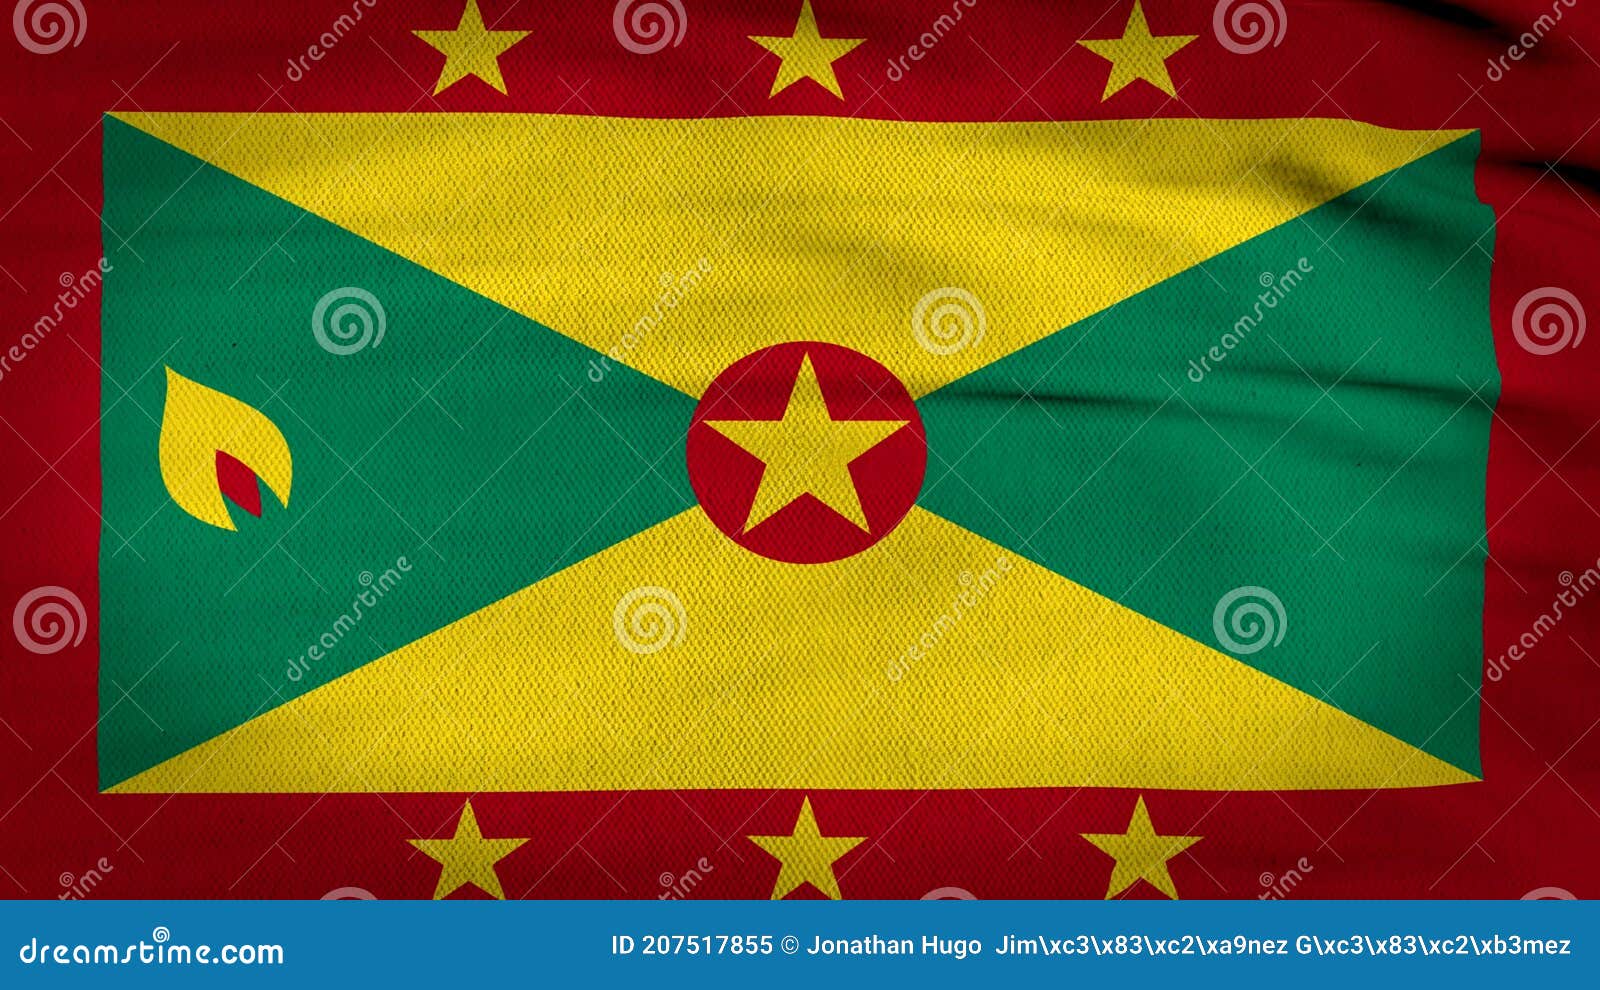 Lá cờ Grenada là một biểu tượng đặc trưng của đất nước miền nhiệt đới này. Với màu đỏ tươi sáng và hình ảnh cây bách hợp, lá cờ này sẽ thật sự làm nổi bật bất kỳ tài liệu hoặc bài viết của bạn.